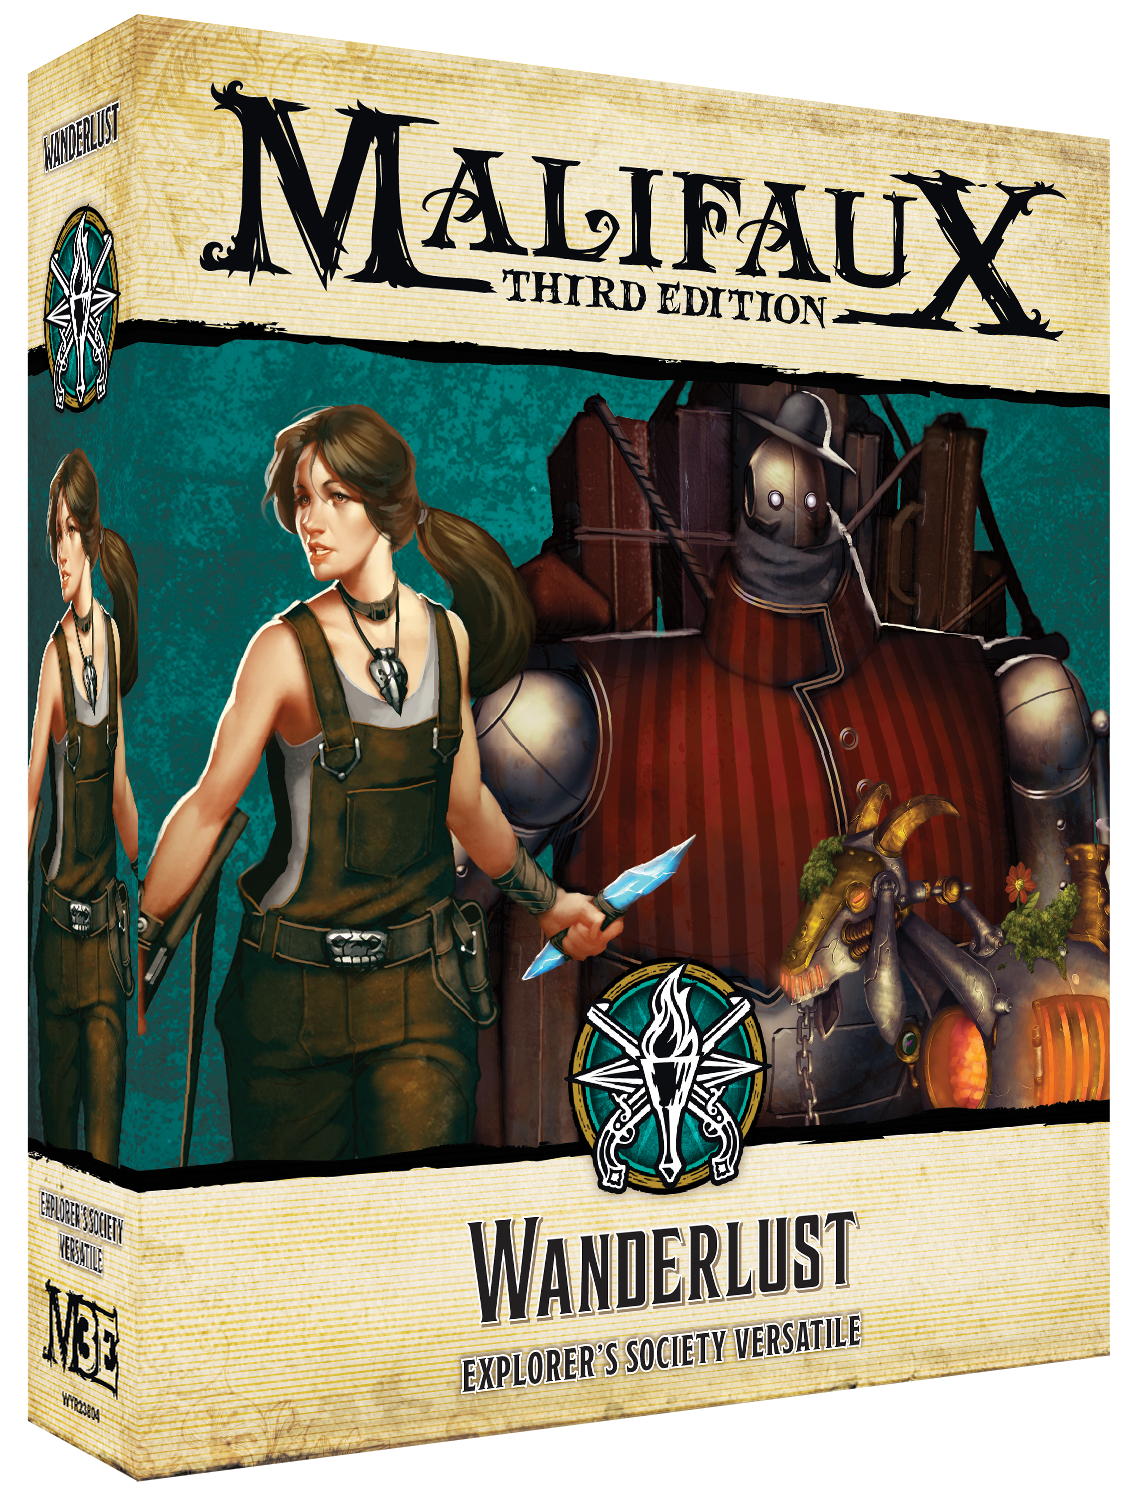 Malifaux 3rd Edition - Wanderlust